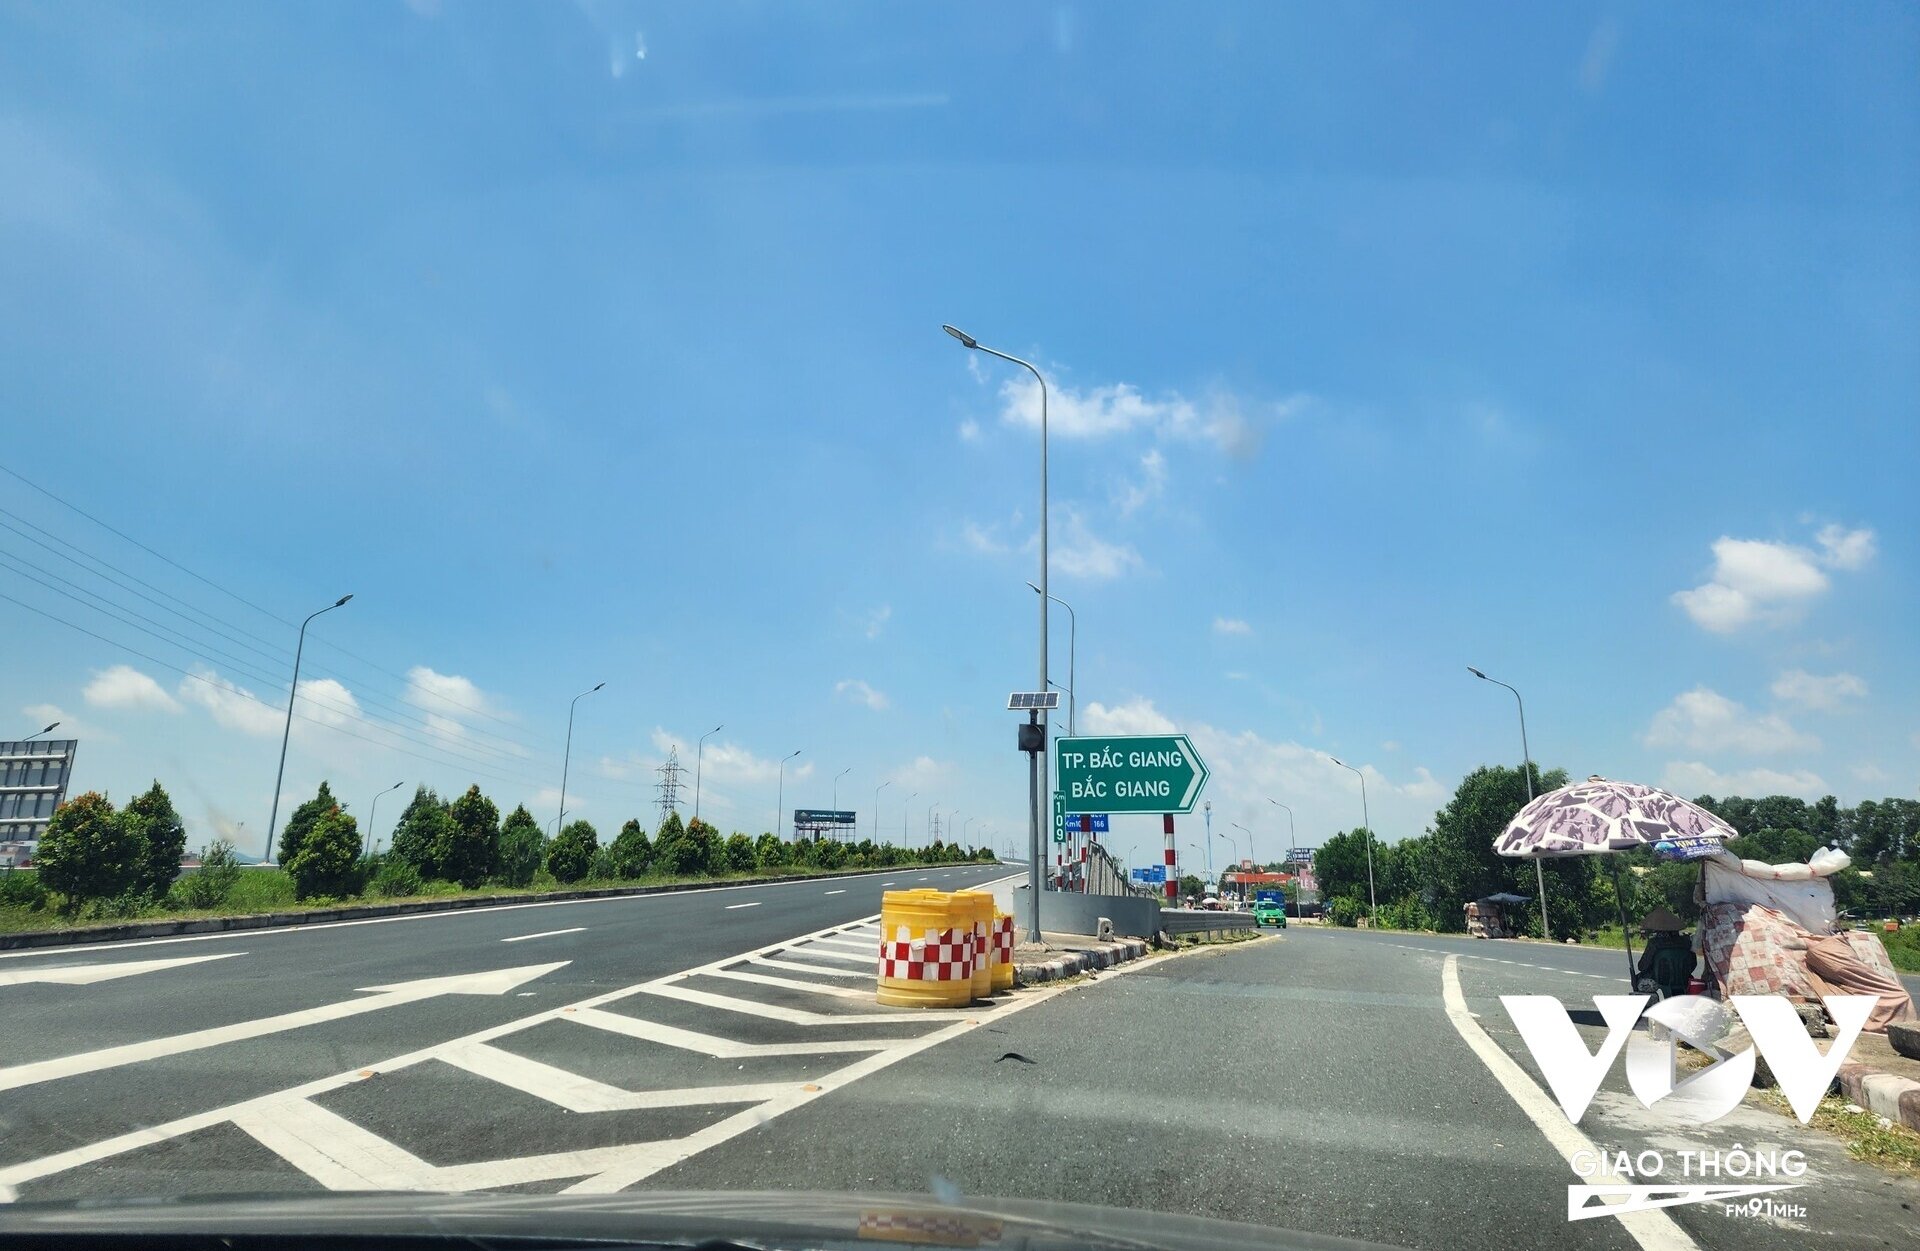 Lối ra của cao tốc Bắc Giang - Lạng Sơn (Km109+400 phải tuyến) hướng ra TP Bắc Giang giao cắt với QL1 có lưu lượng phượng tiện giao thông đông đúc